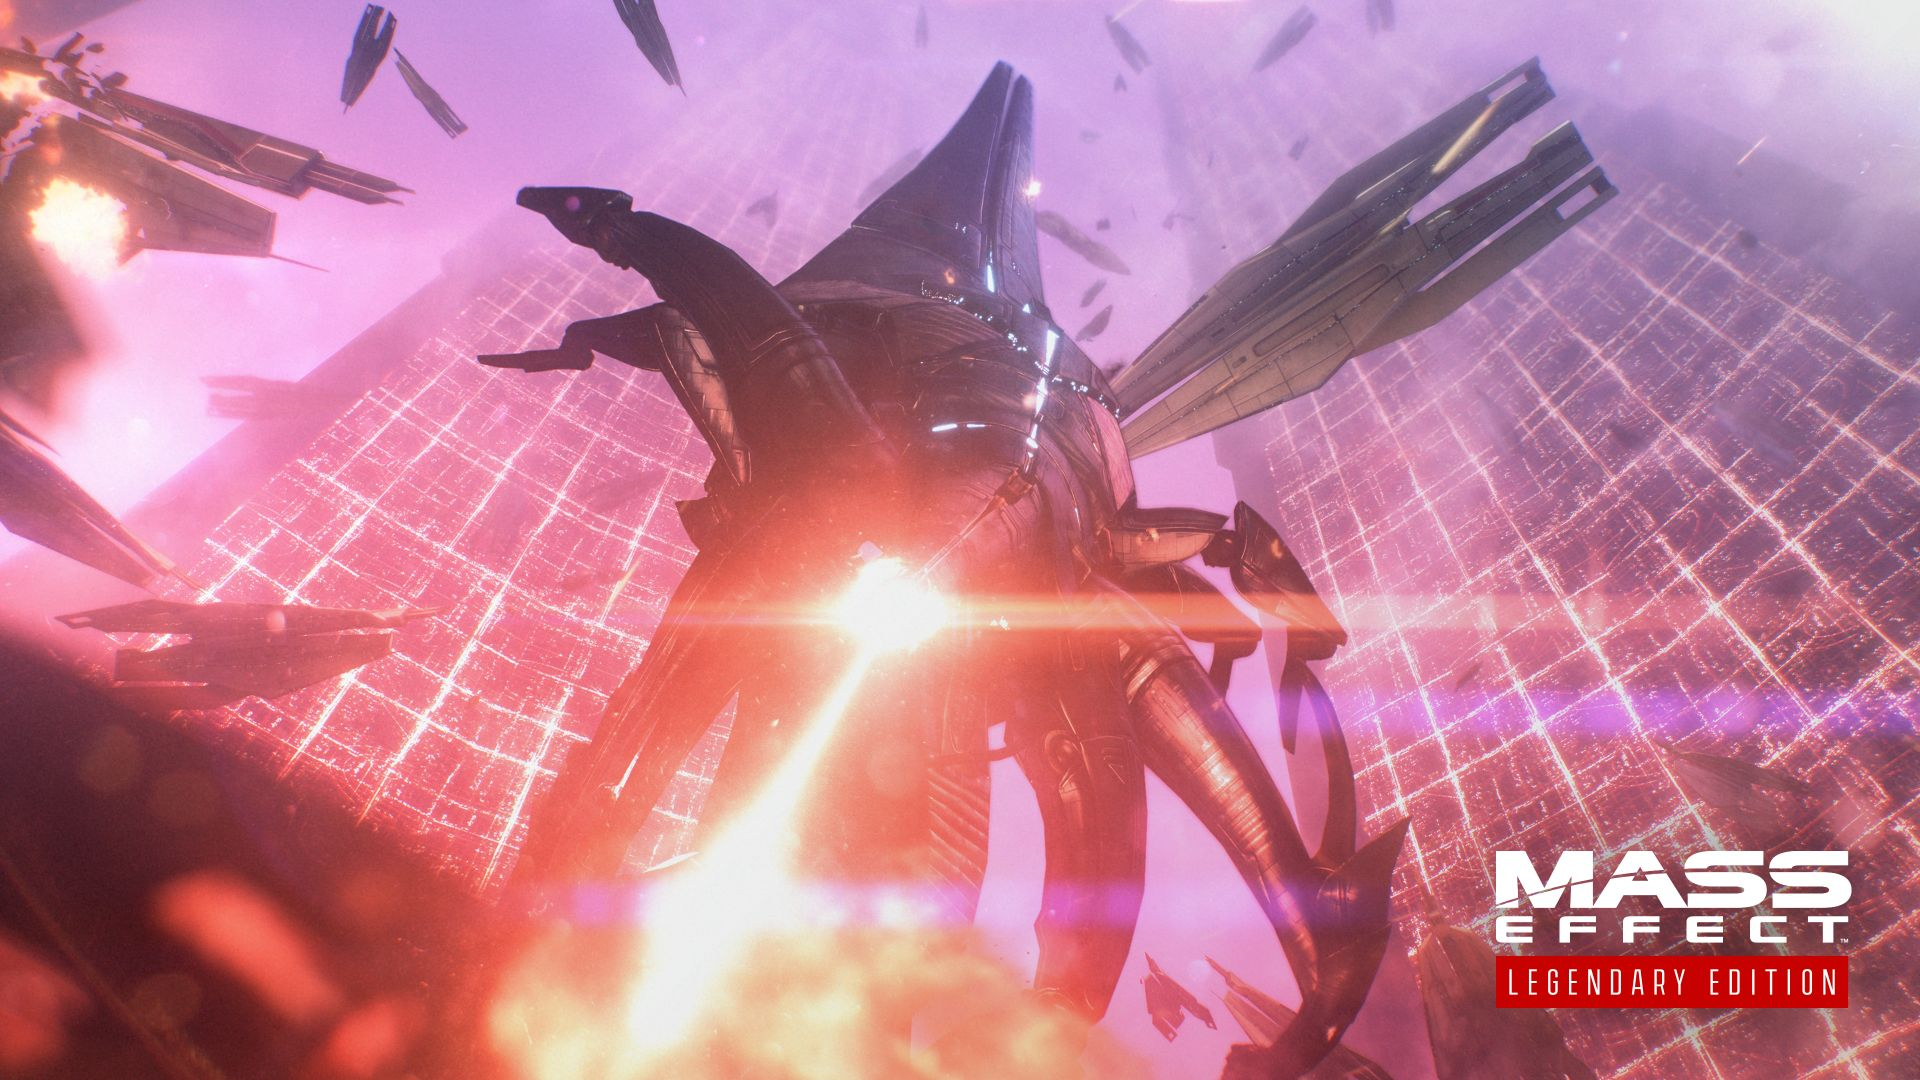 Первая Mass Effect из сборника Legendary Edition получит изначальное русское озвучение, которое расстроило многих фанатов